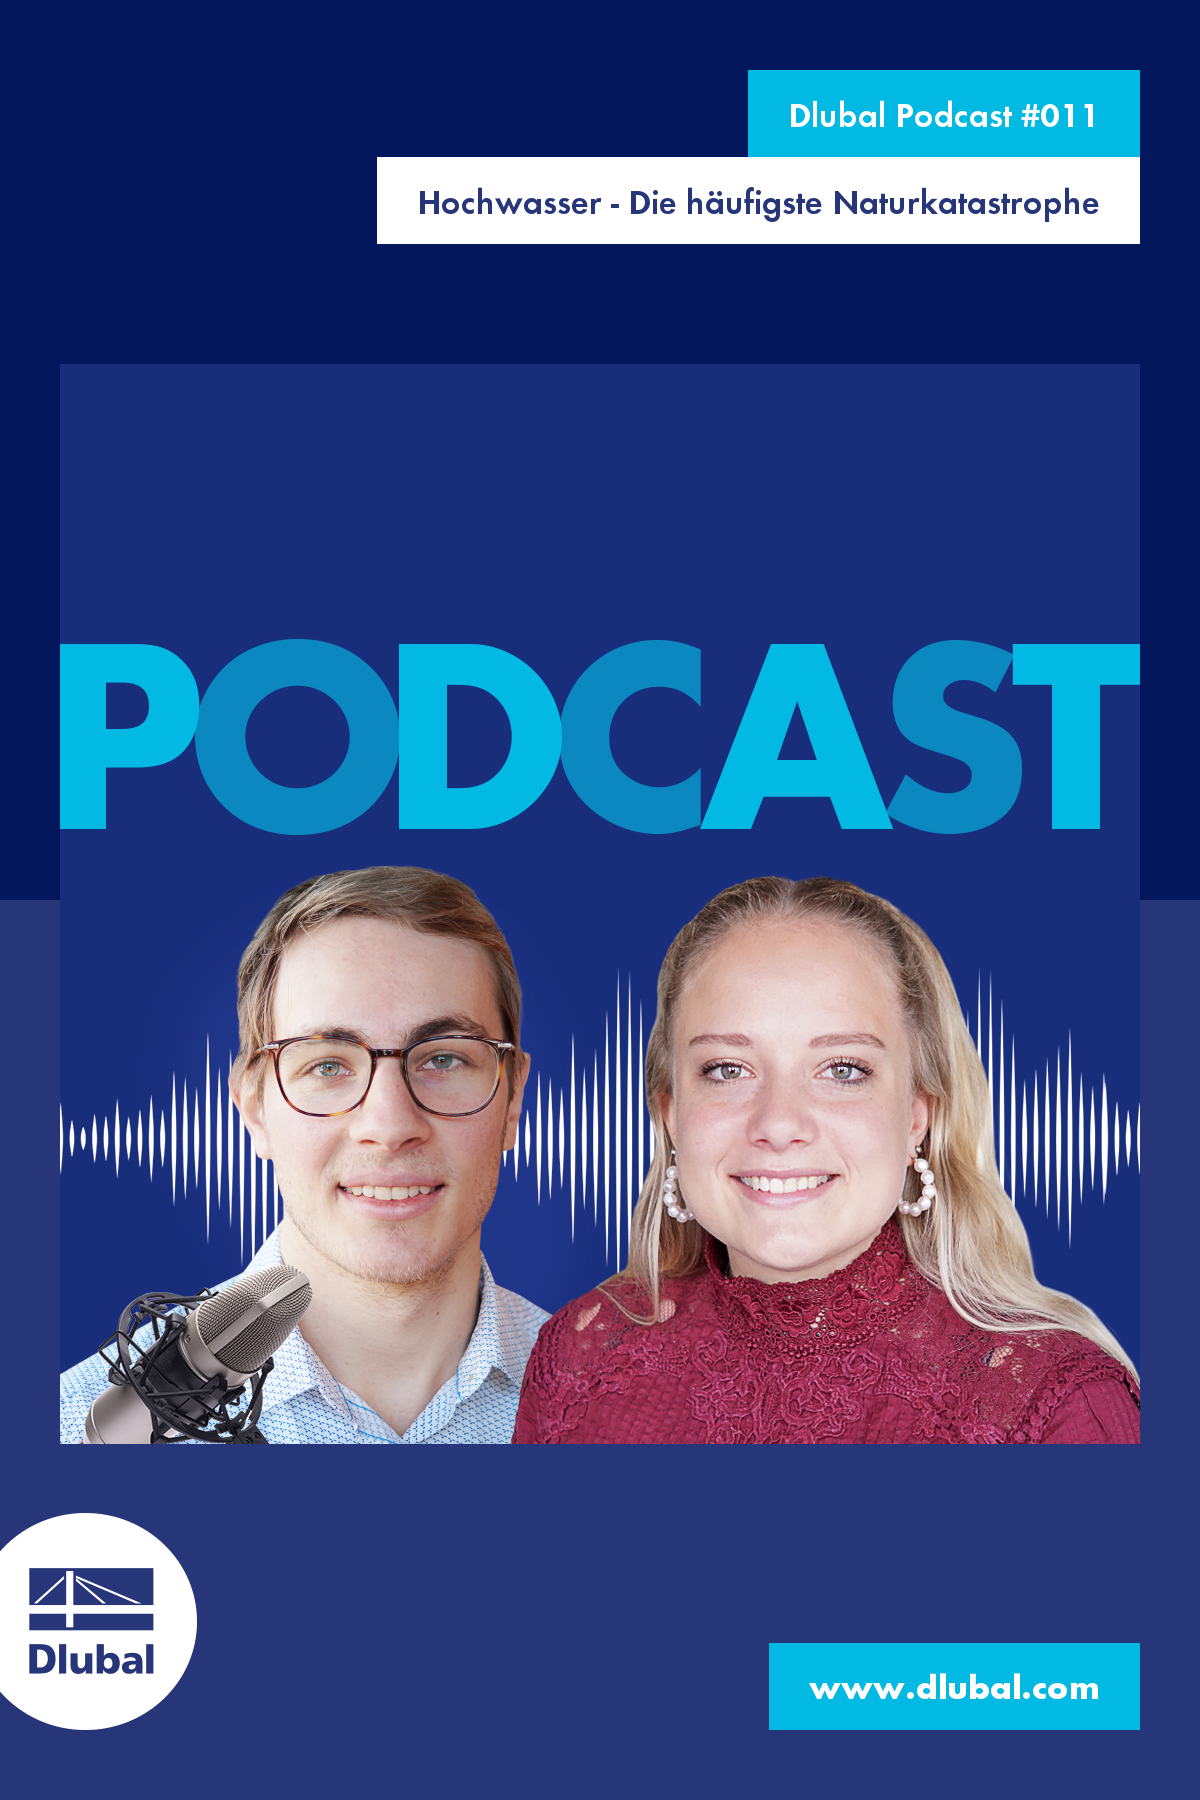 Podcast de Dlubal #011